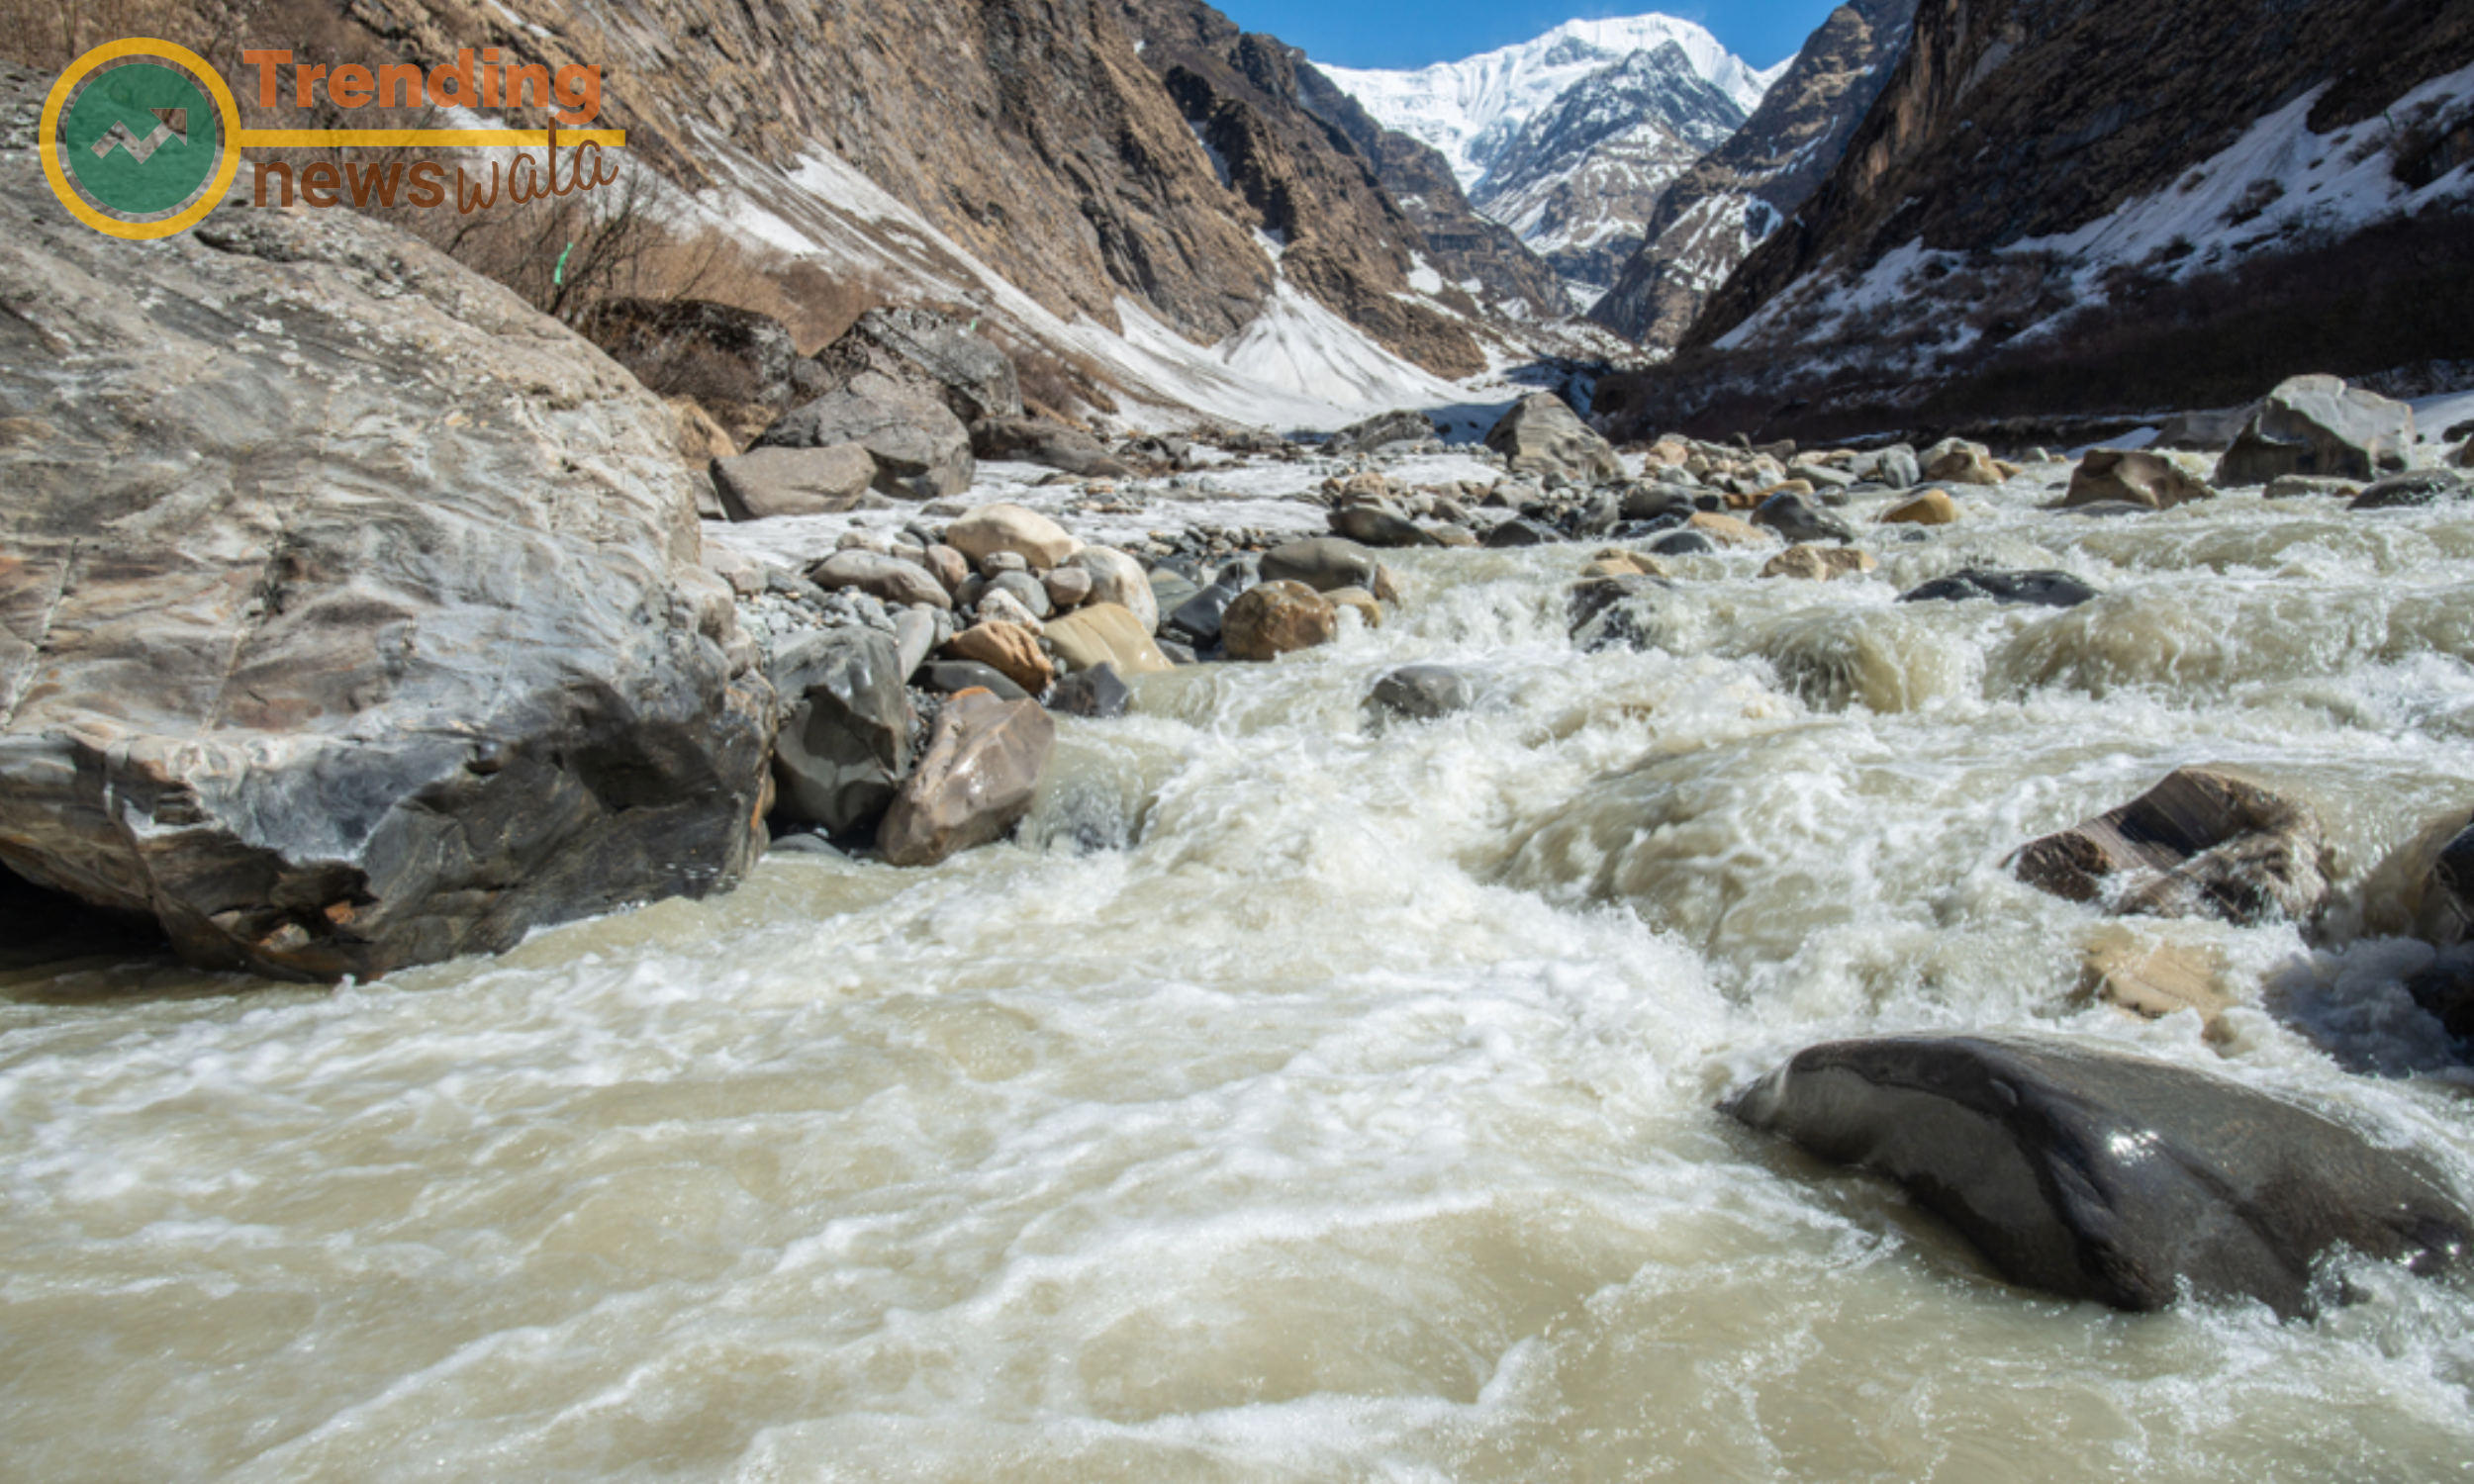 The trek involves crossing the Modi Khola River on suspension bridges